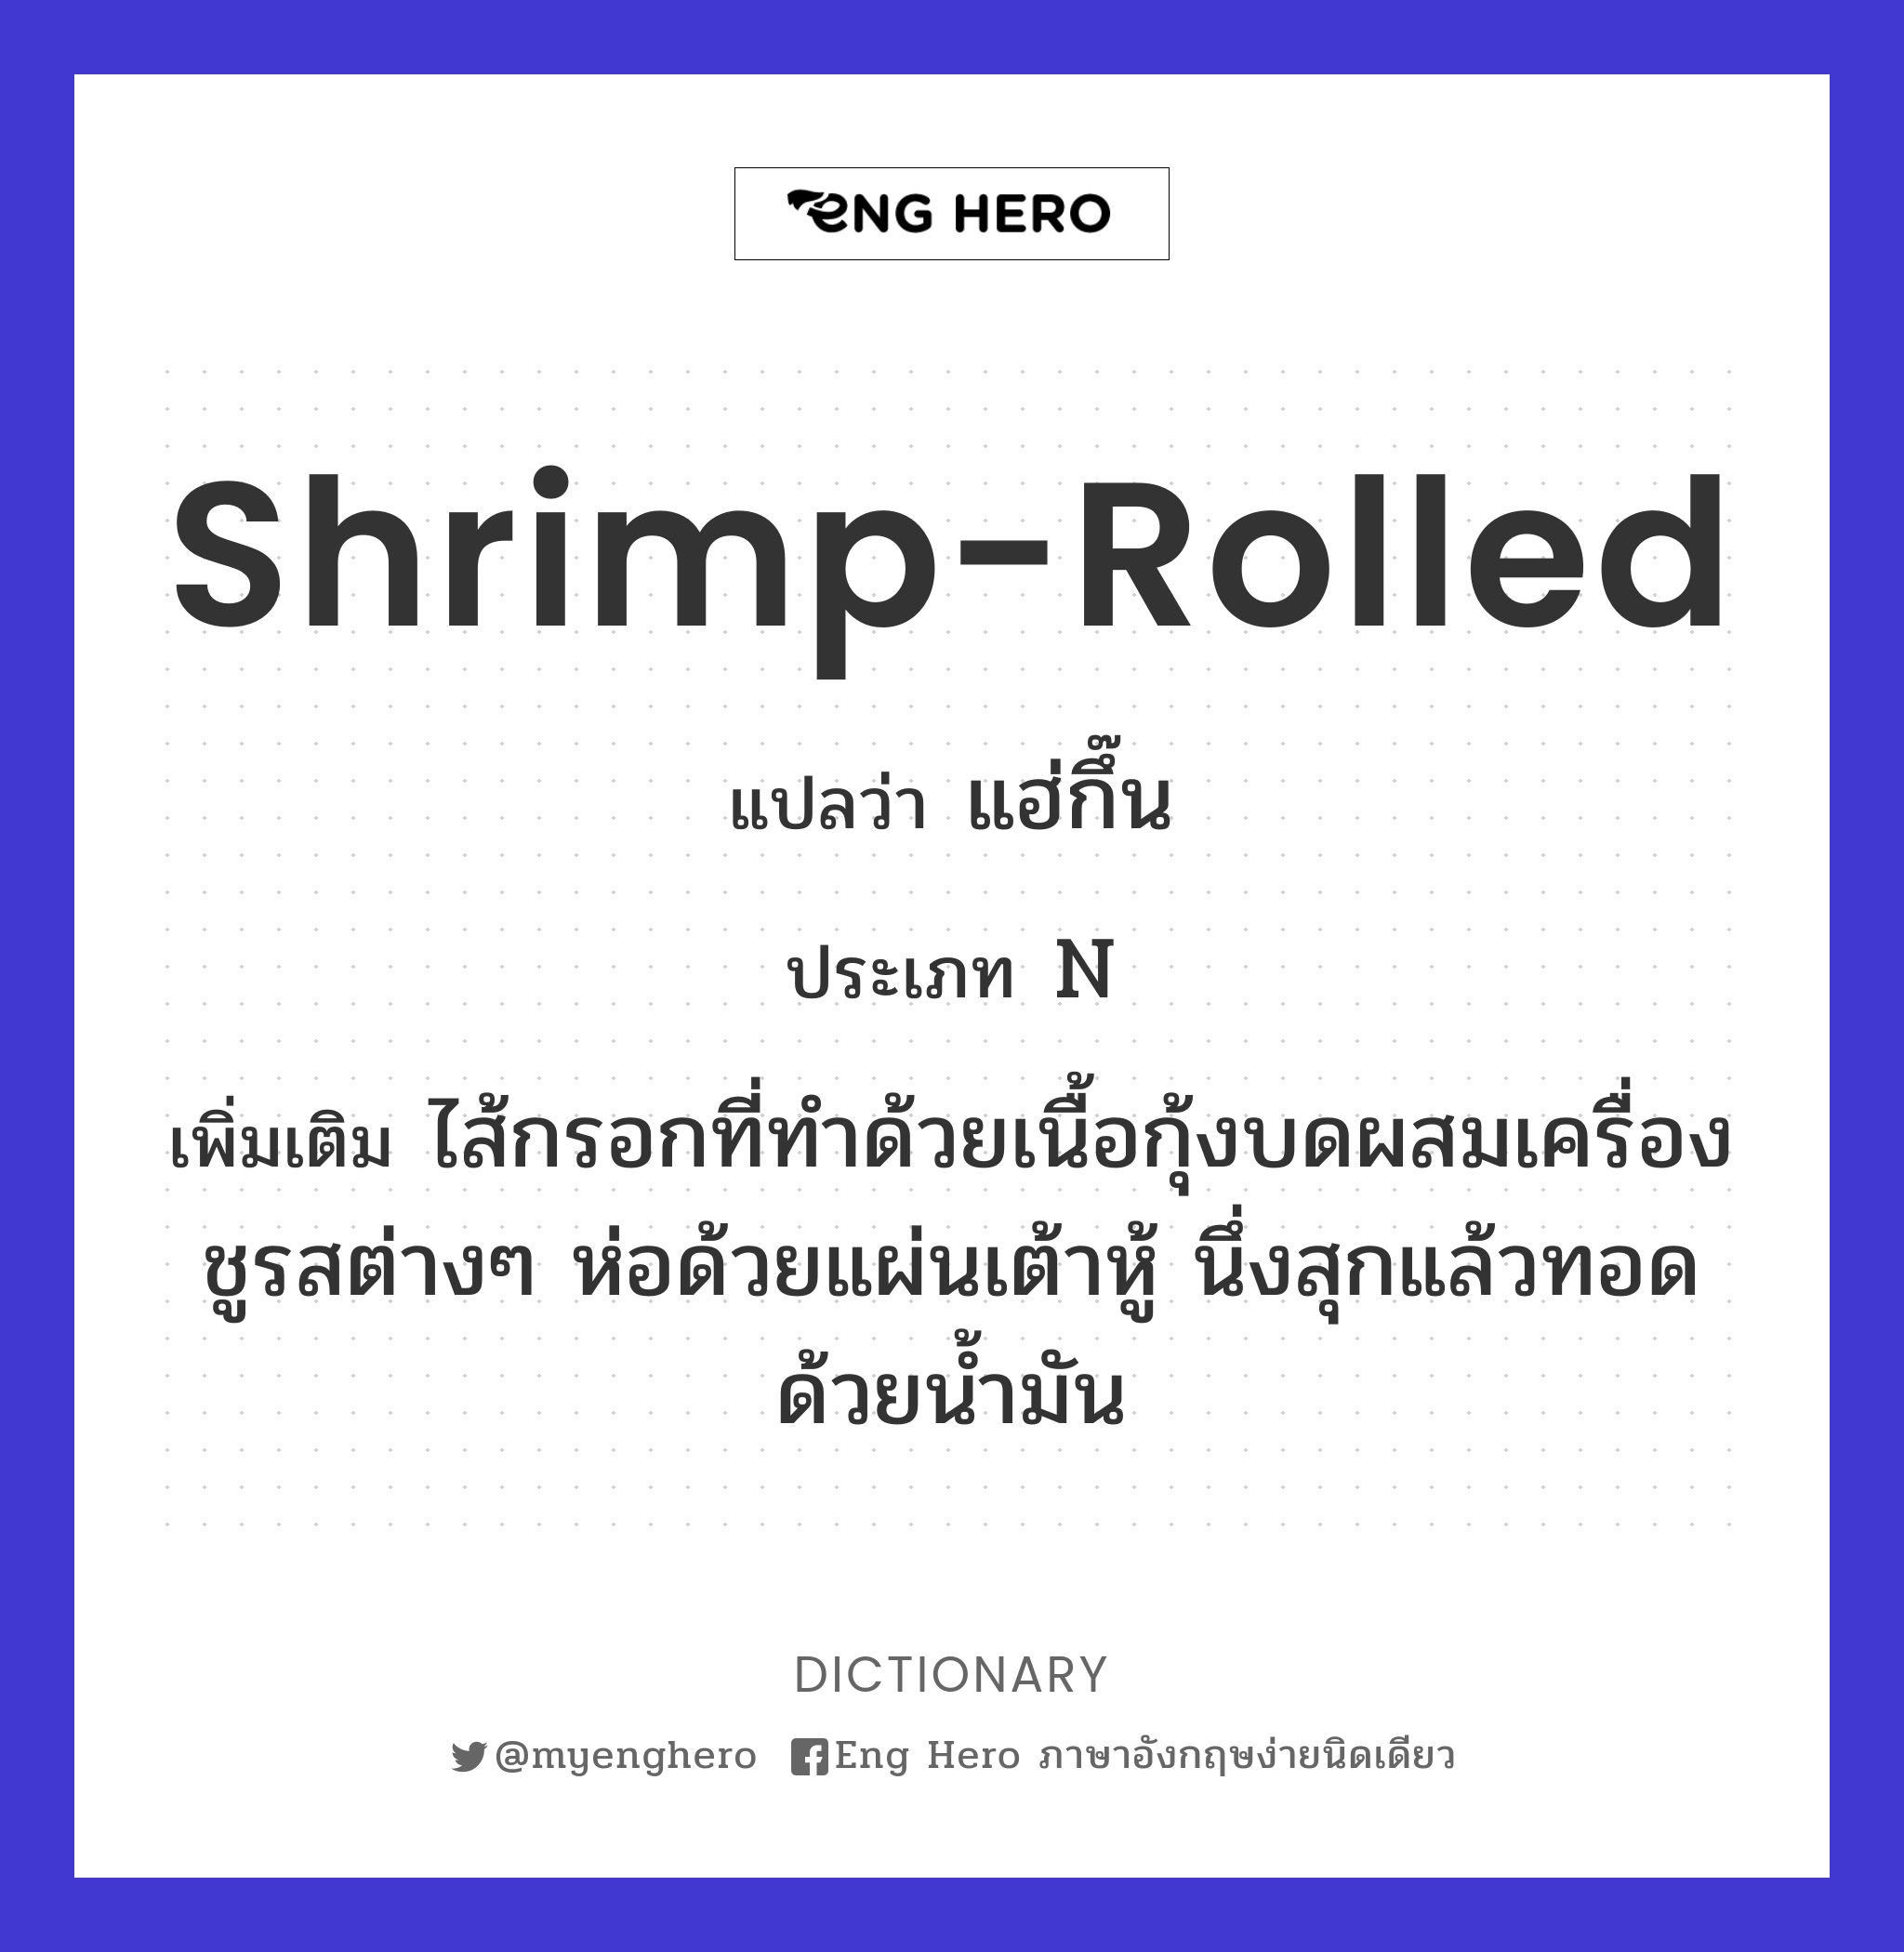 shrimp-rolled